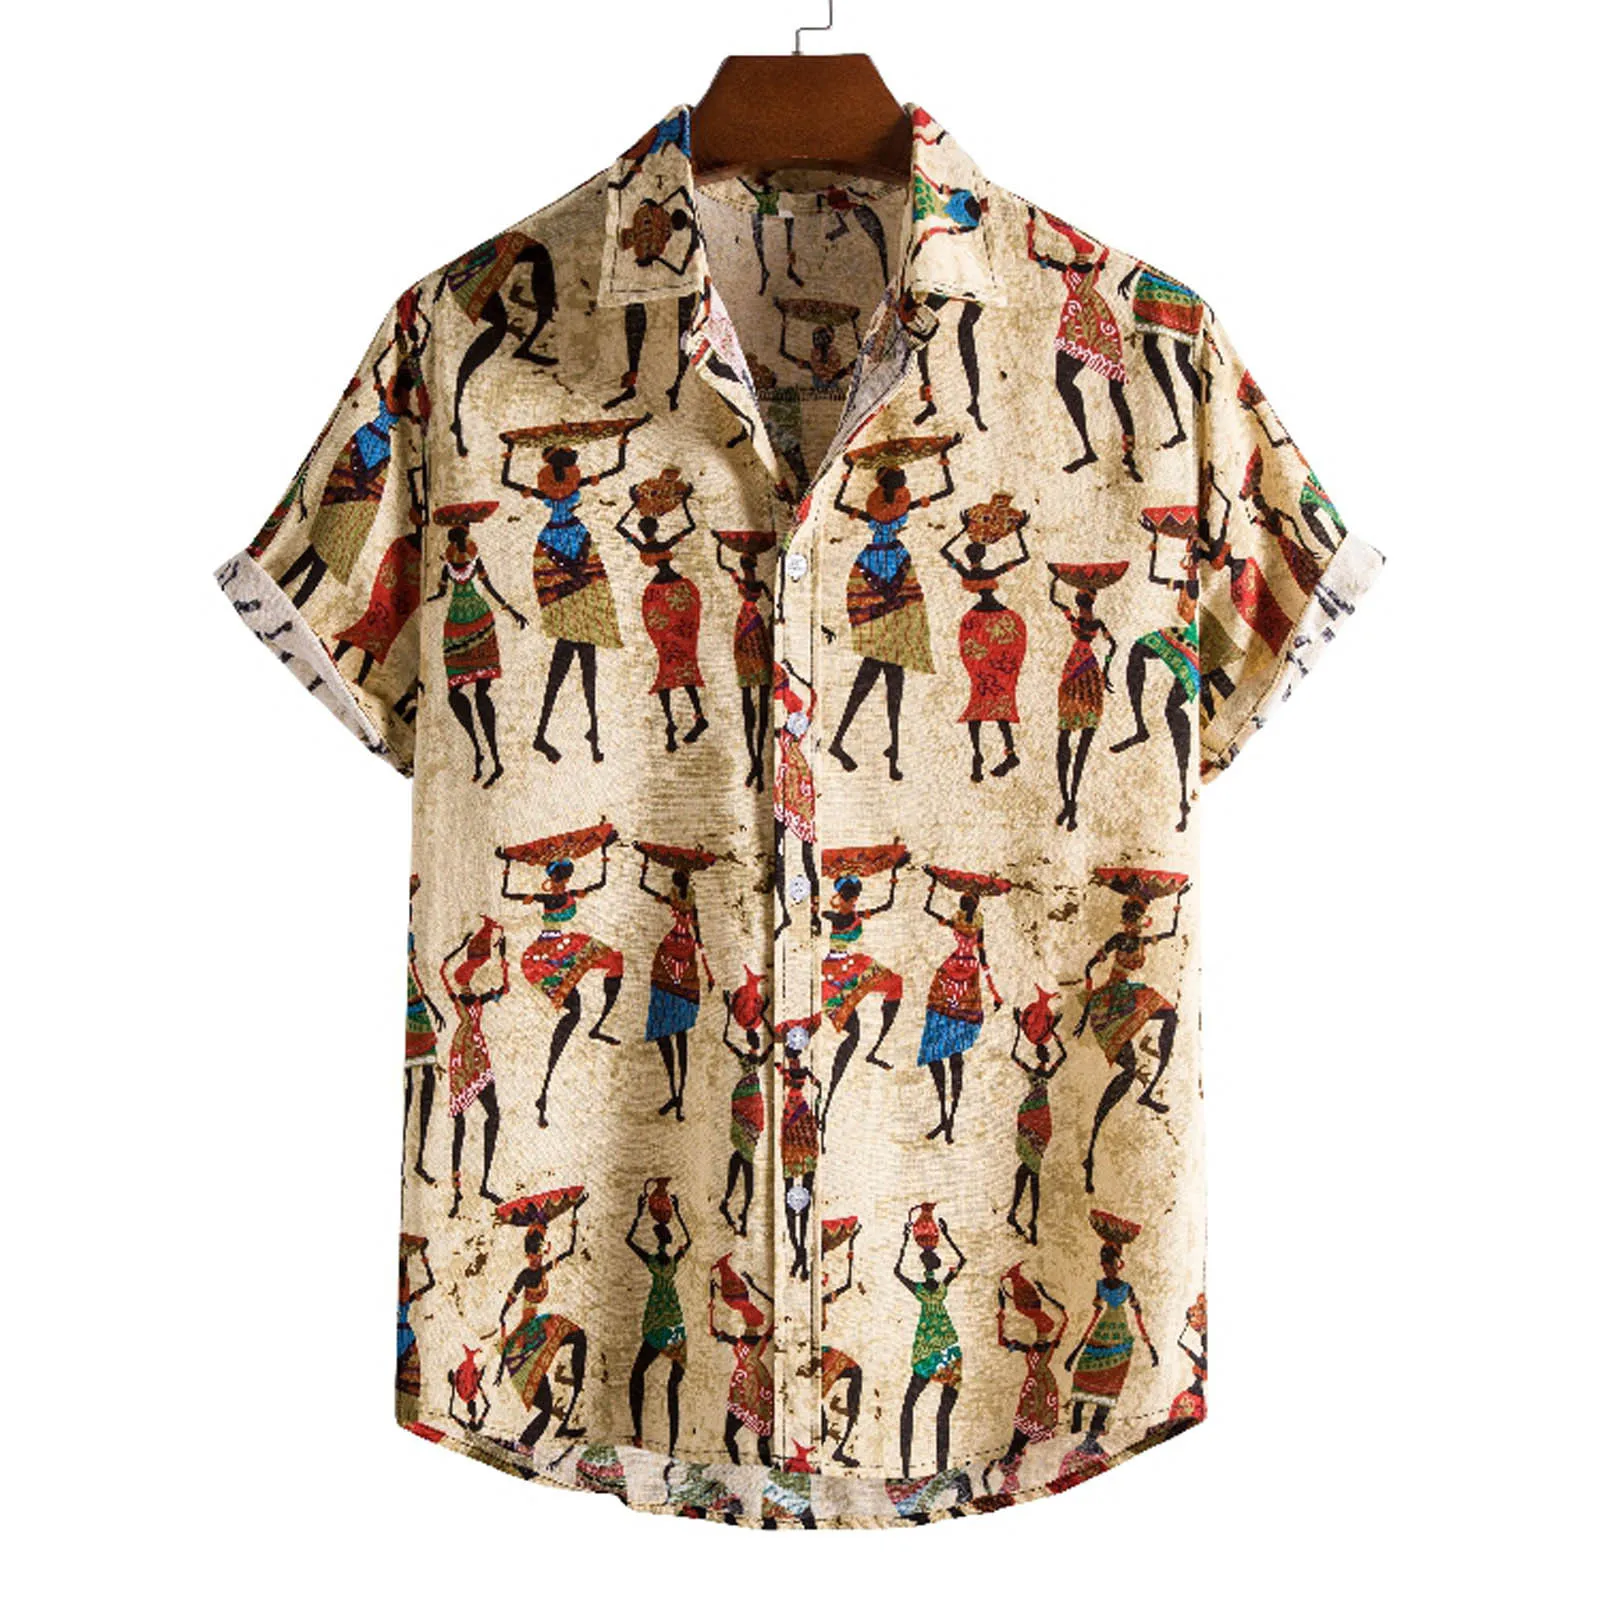 Camisa Africana Floral para hombre, camisa de manga corta de algodón y lino, ropa de playa informal con botones, ropa de flores para vacaciones, verano 2021